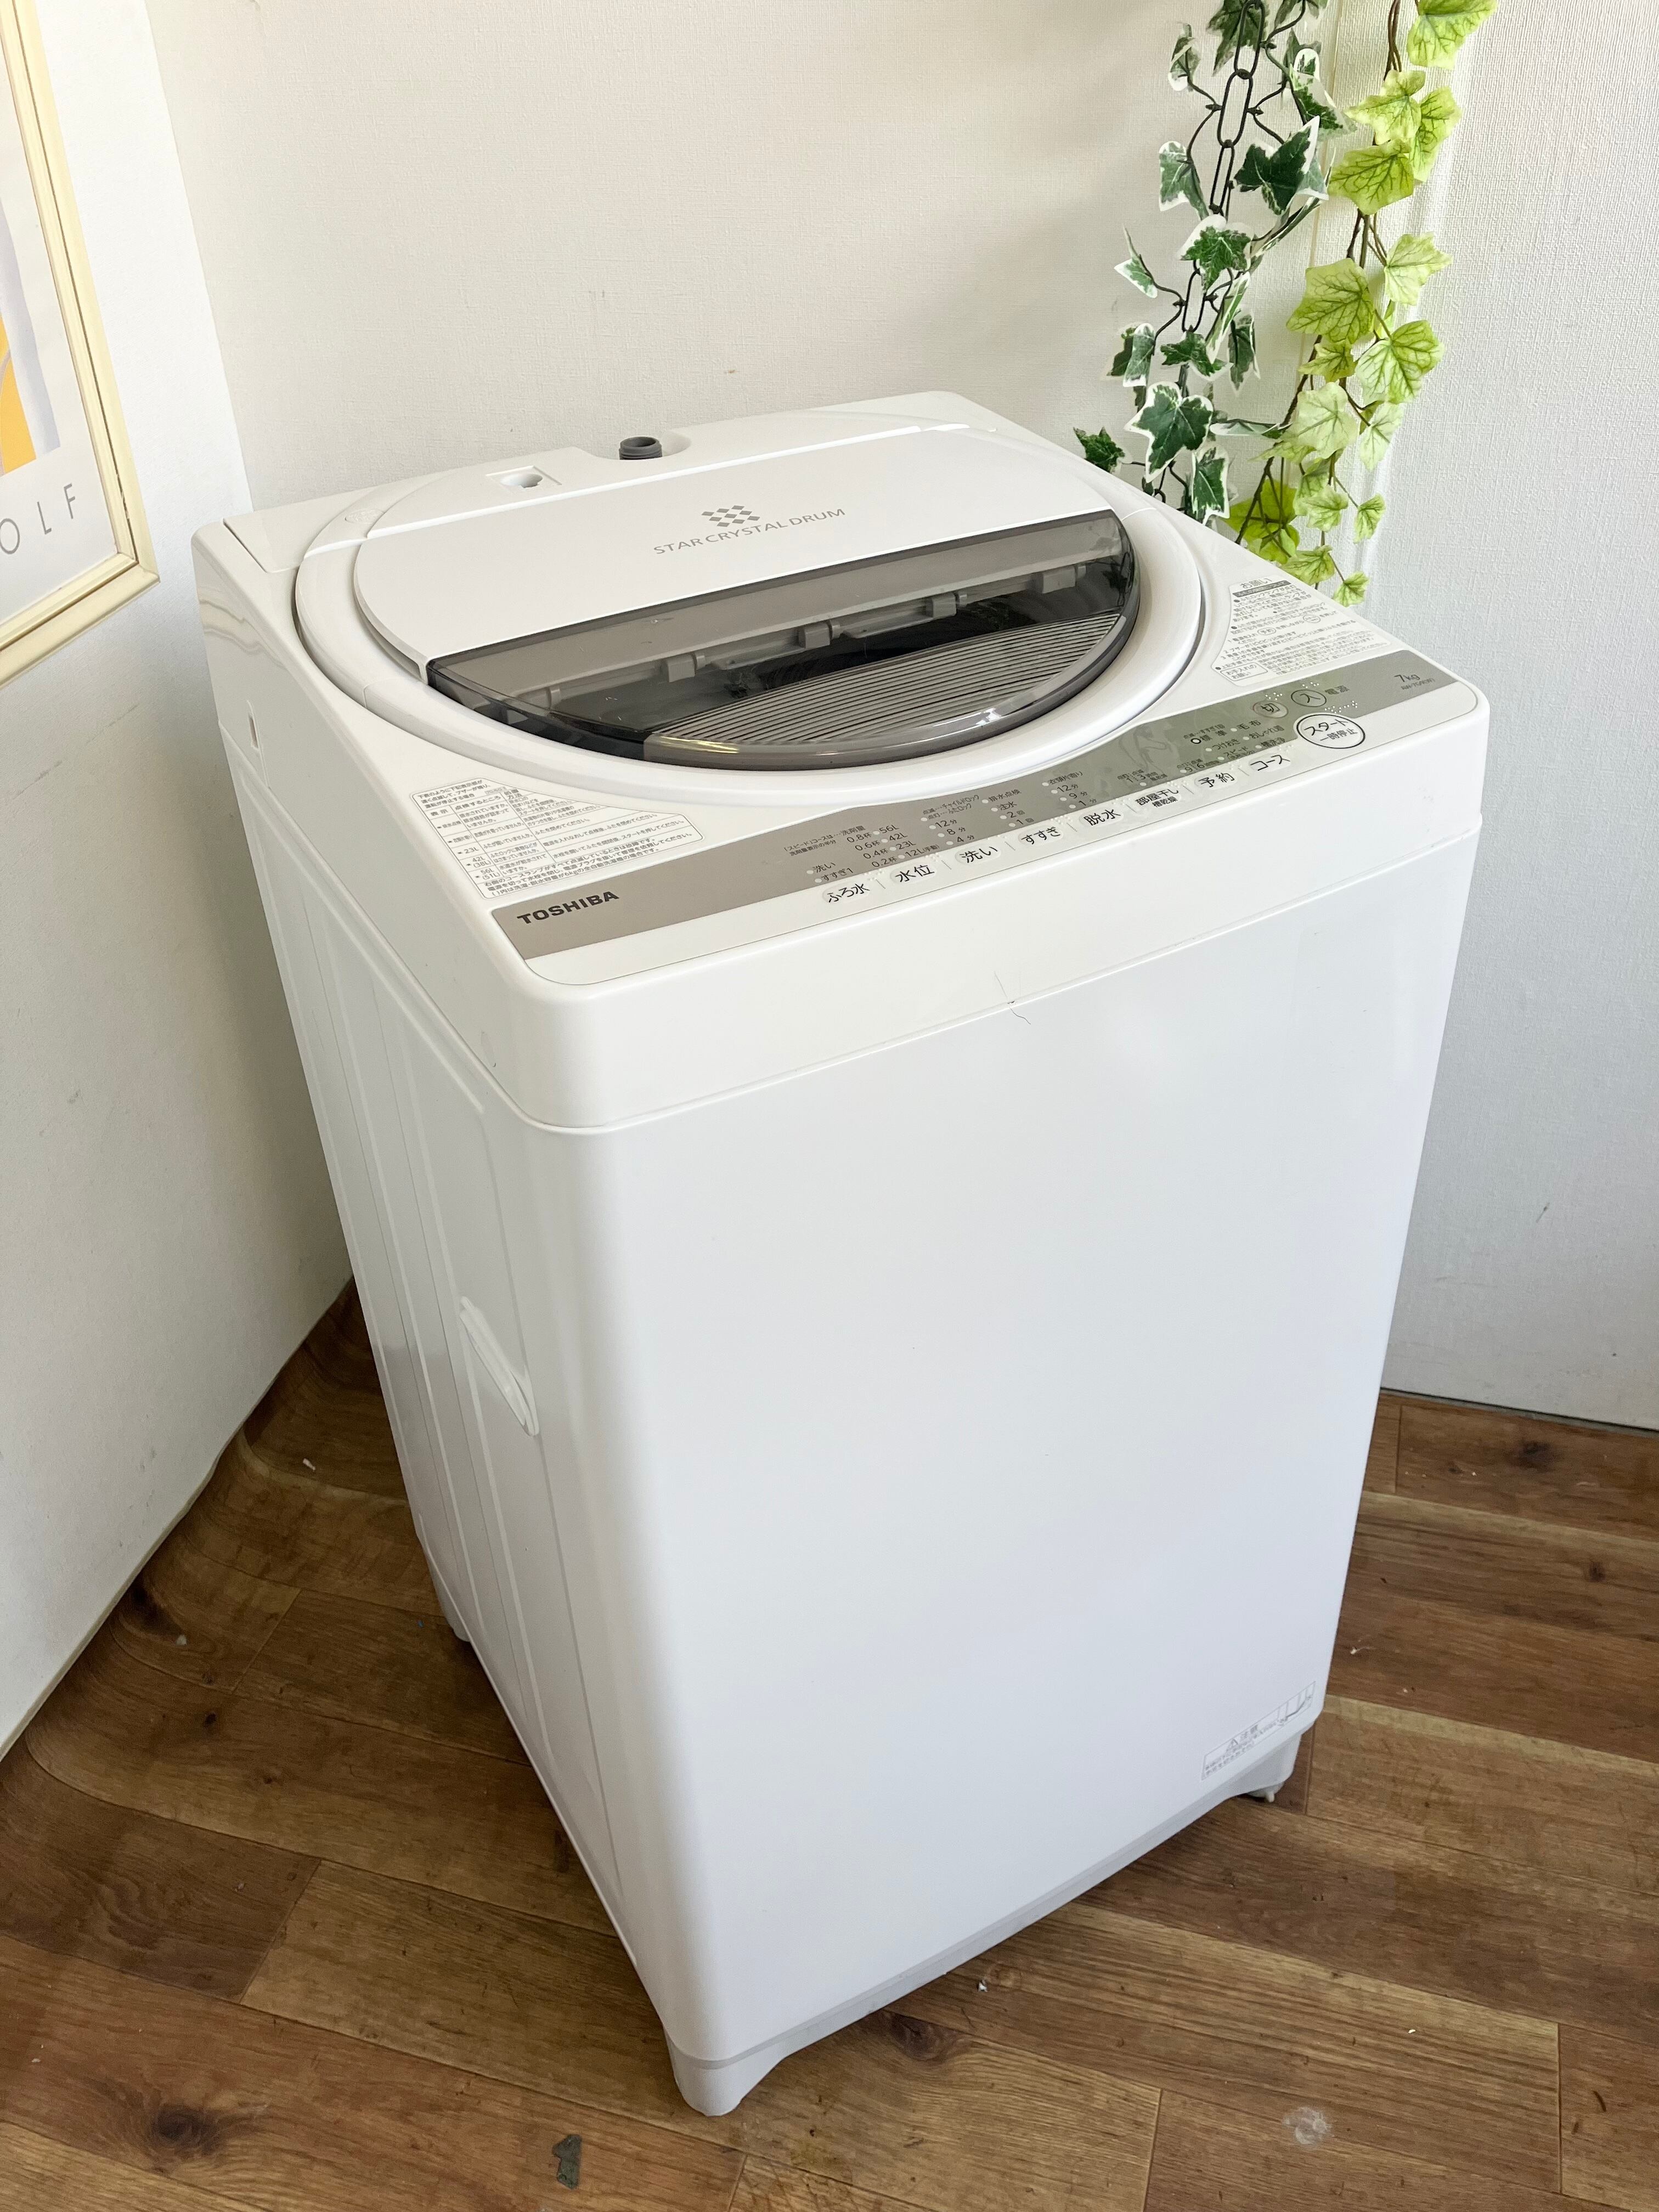 名古屋市内送料無料　東芝 洗濯機 高年式 2021年製　AW-7G9   7kg